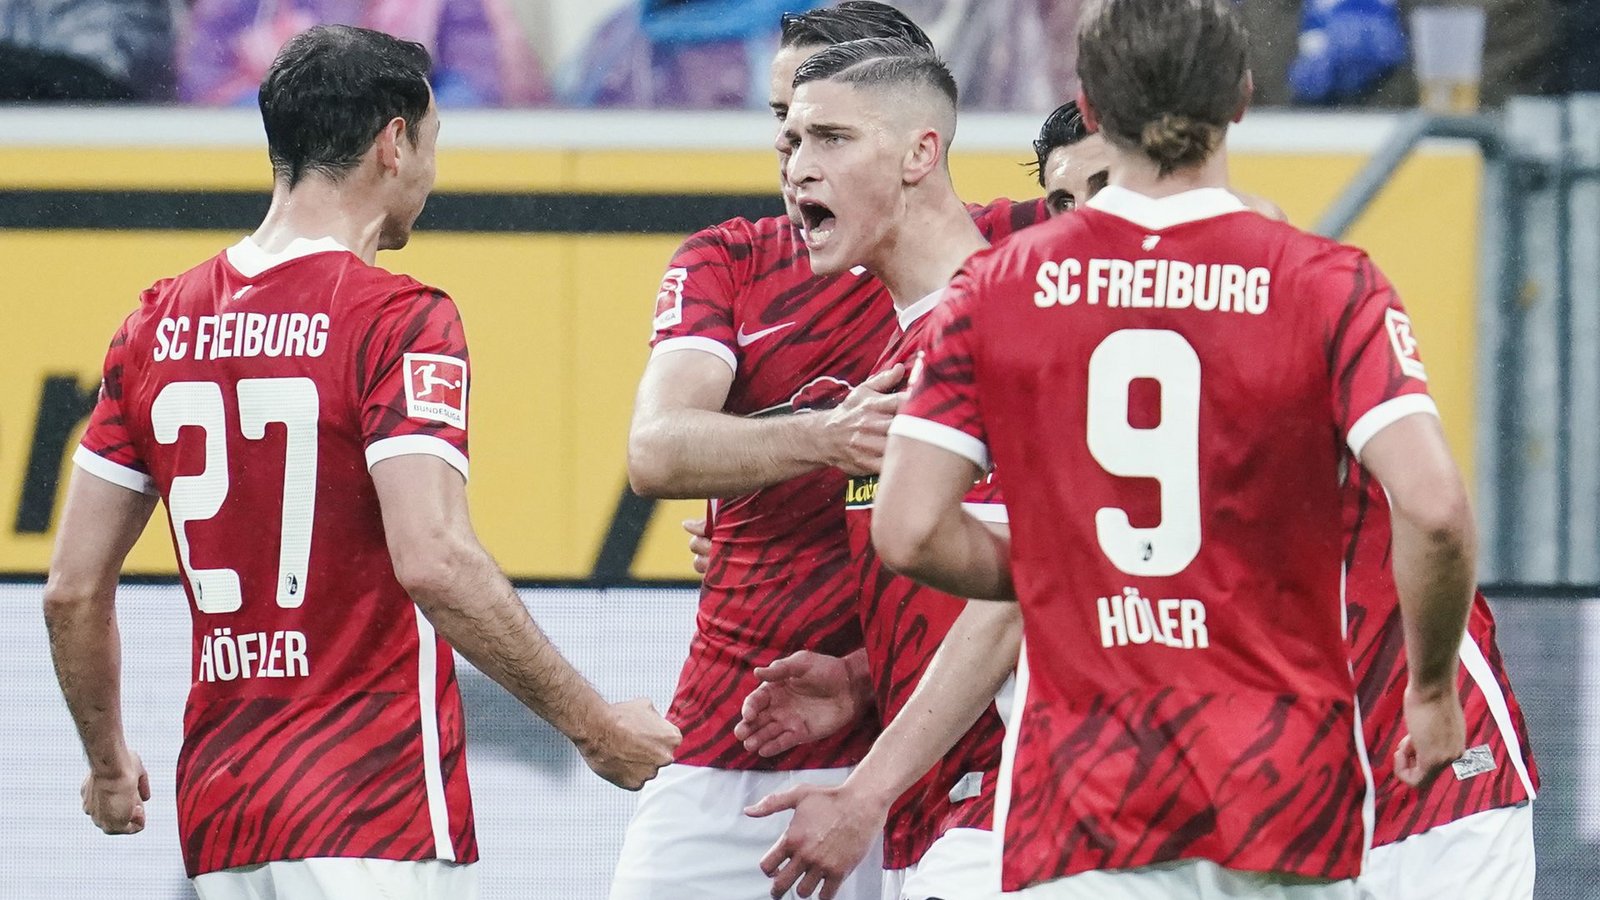 Der SC Freiburg steht im Finale des DFB-Pokal.Foto: dpa/Uwe Anspach